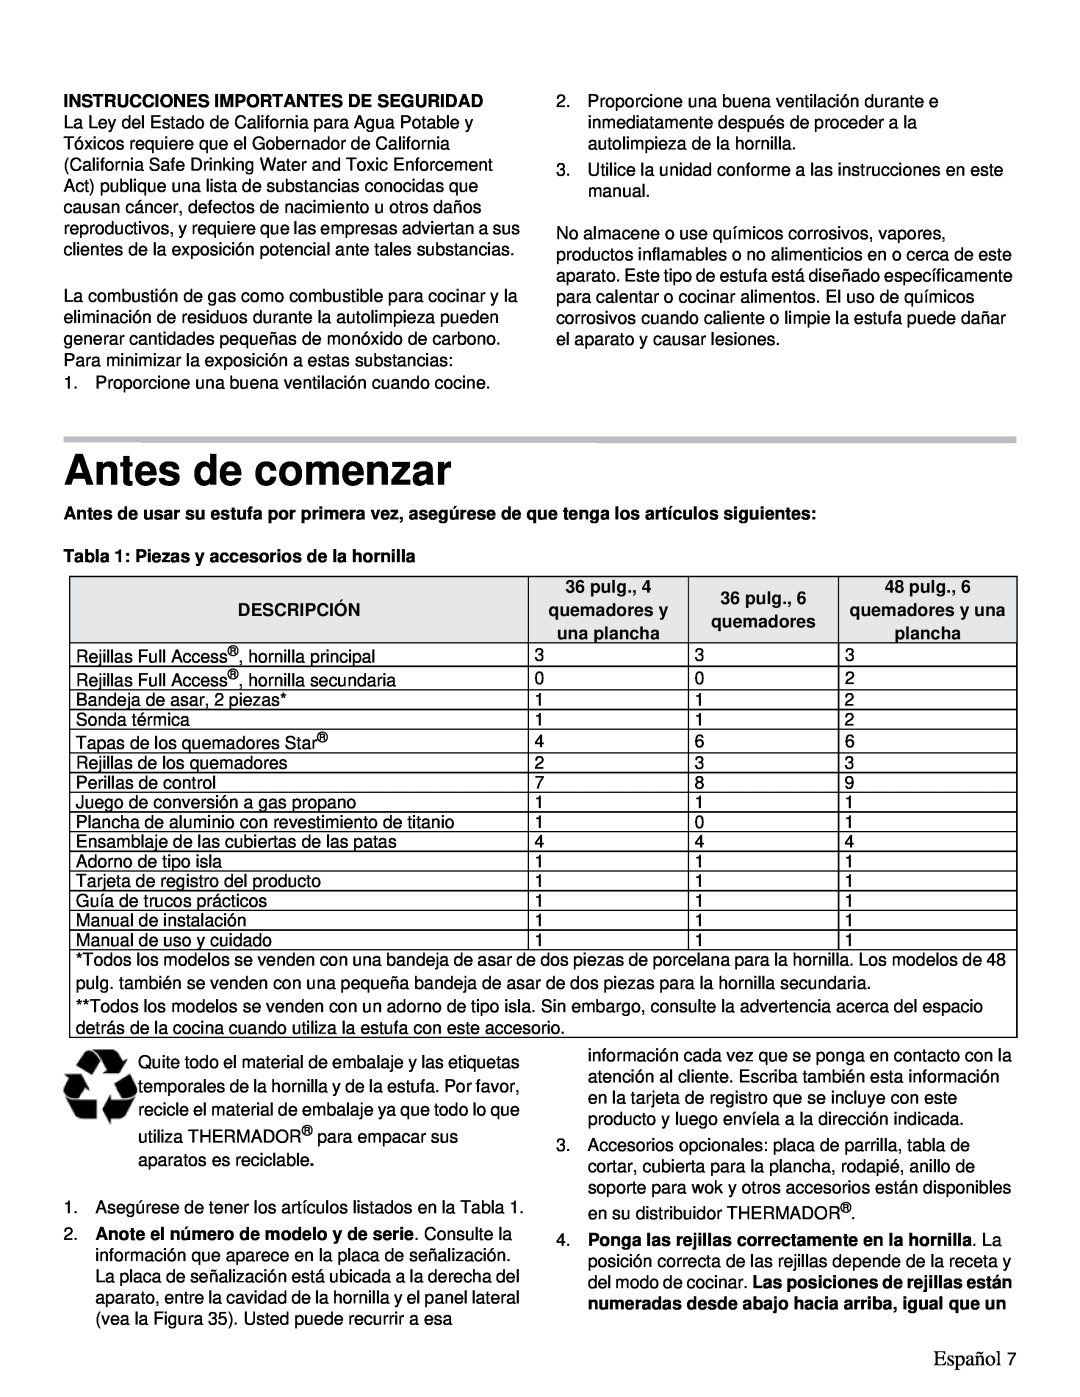 Thermador PRD36 Antes de comenzar, Español, Tabla 1: Piezas y accesorios de la hornilla, pulg, Descripción, quemadores y 